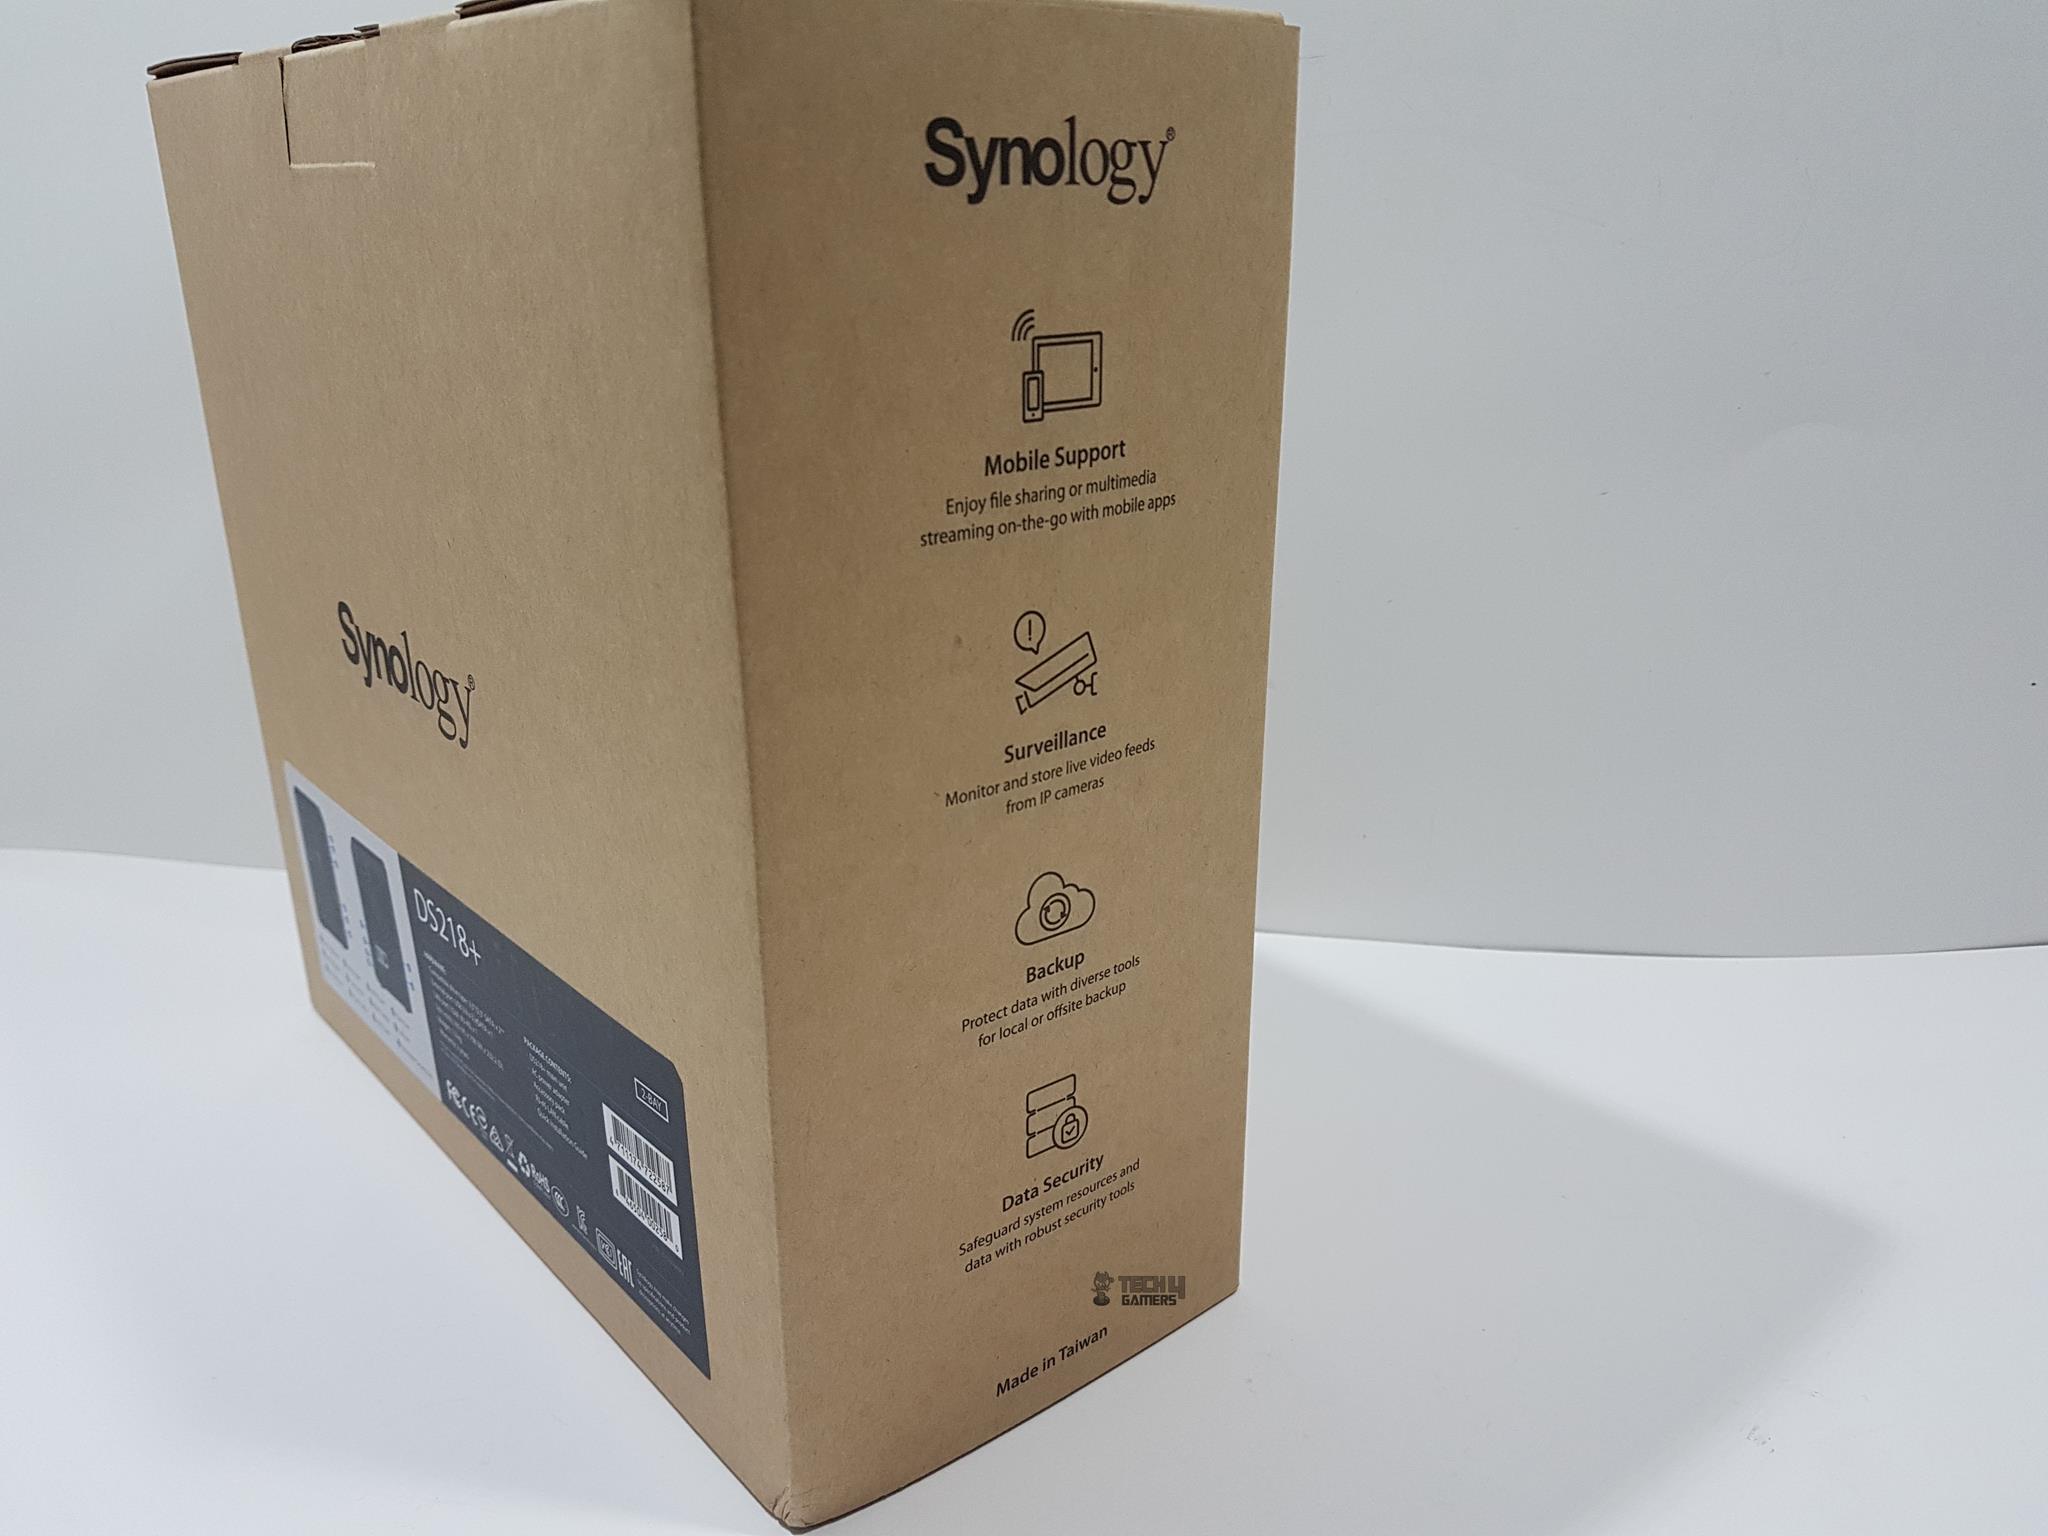 Synology 2 bay Nas Diskstation Ds218+ Left Side Packaging